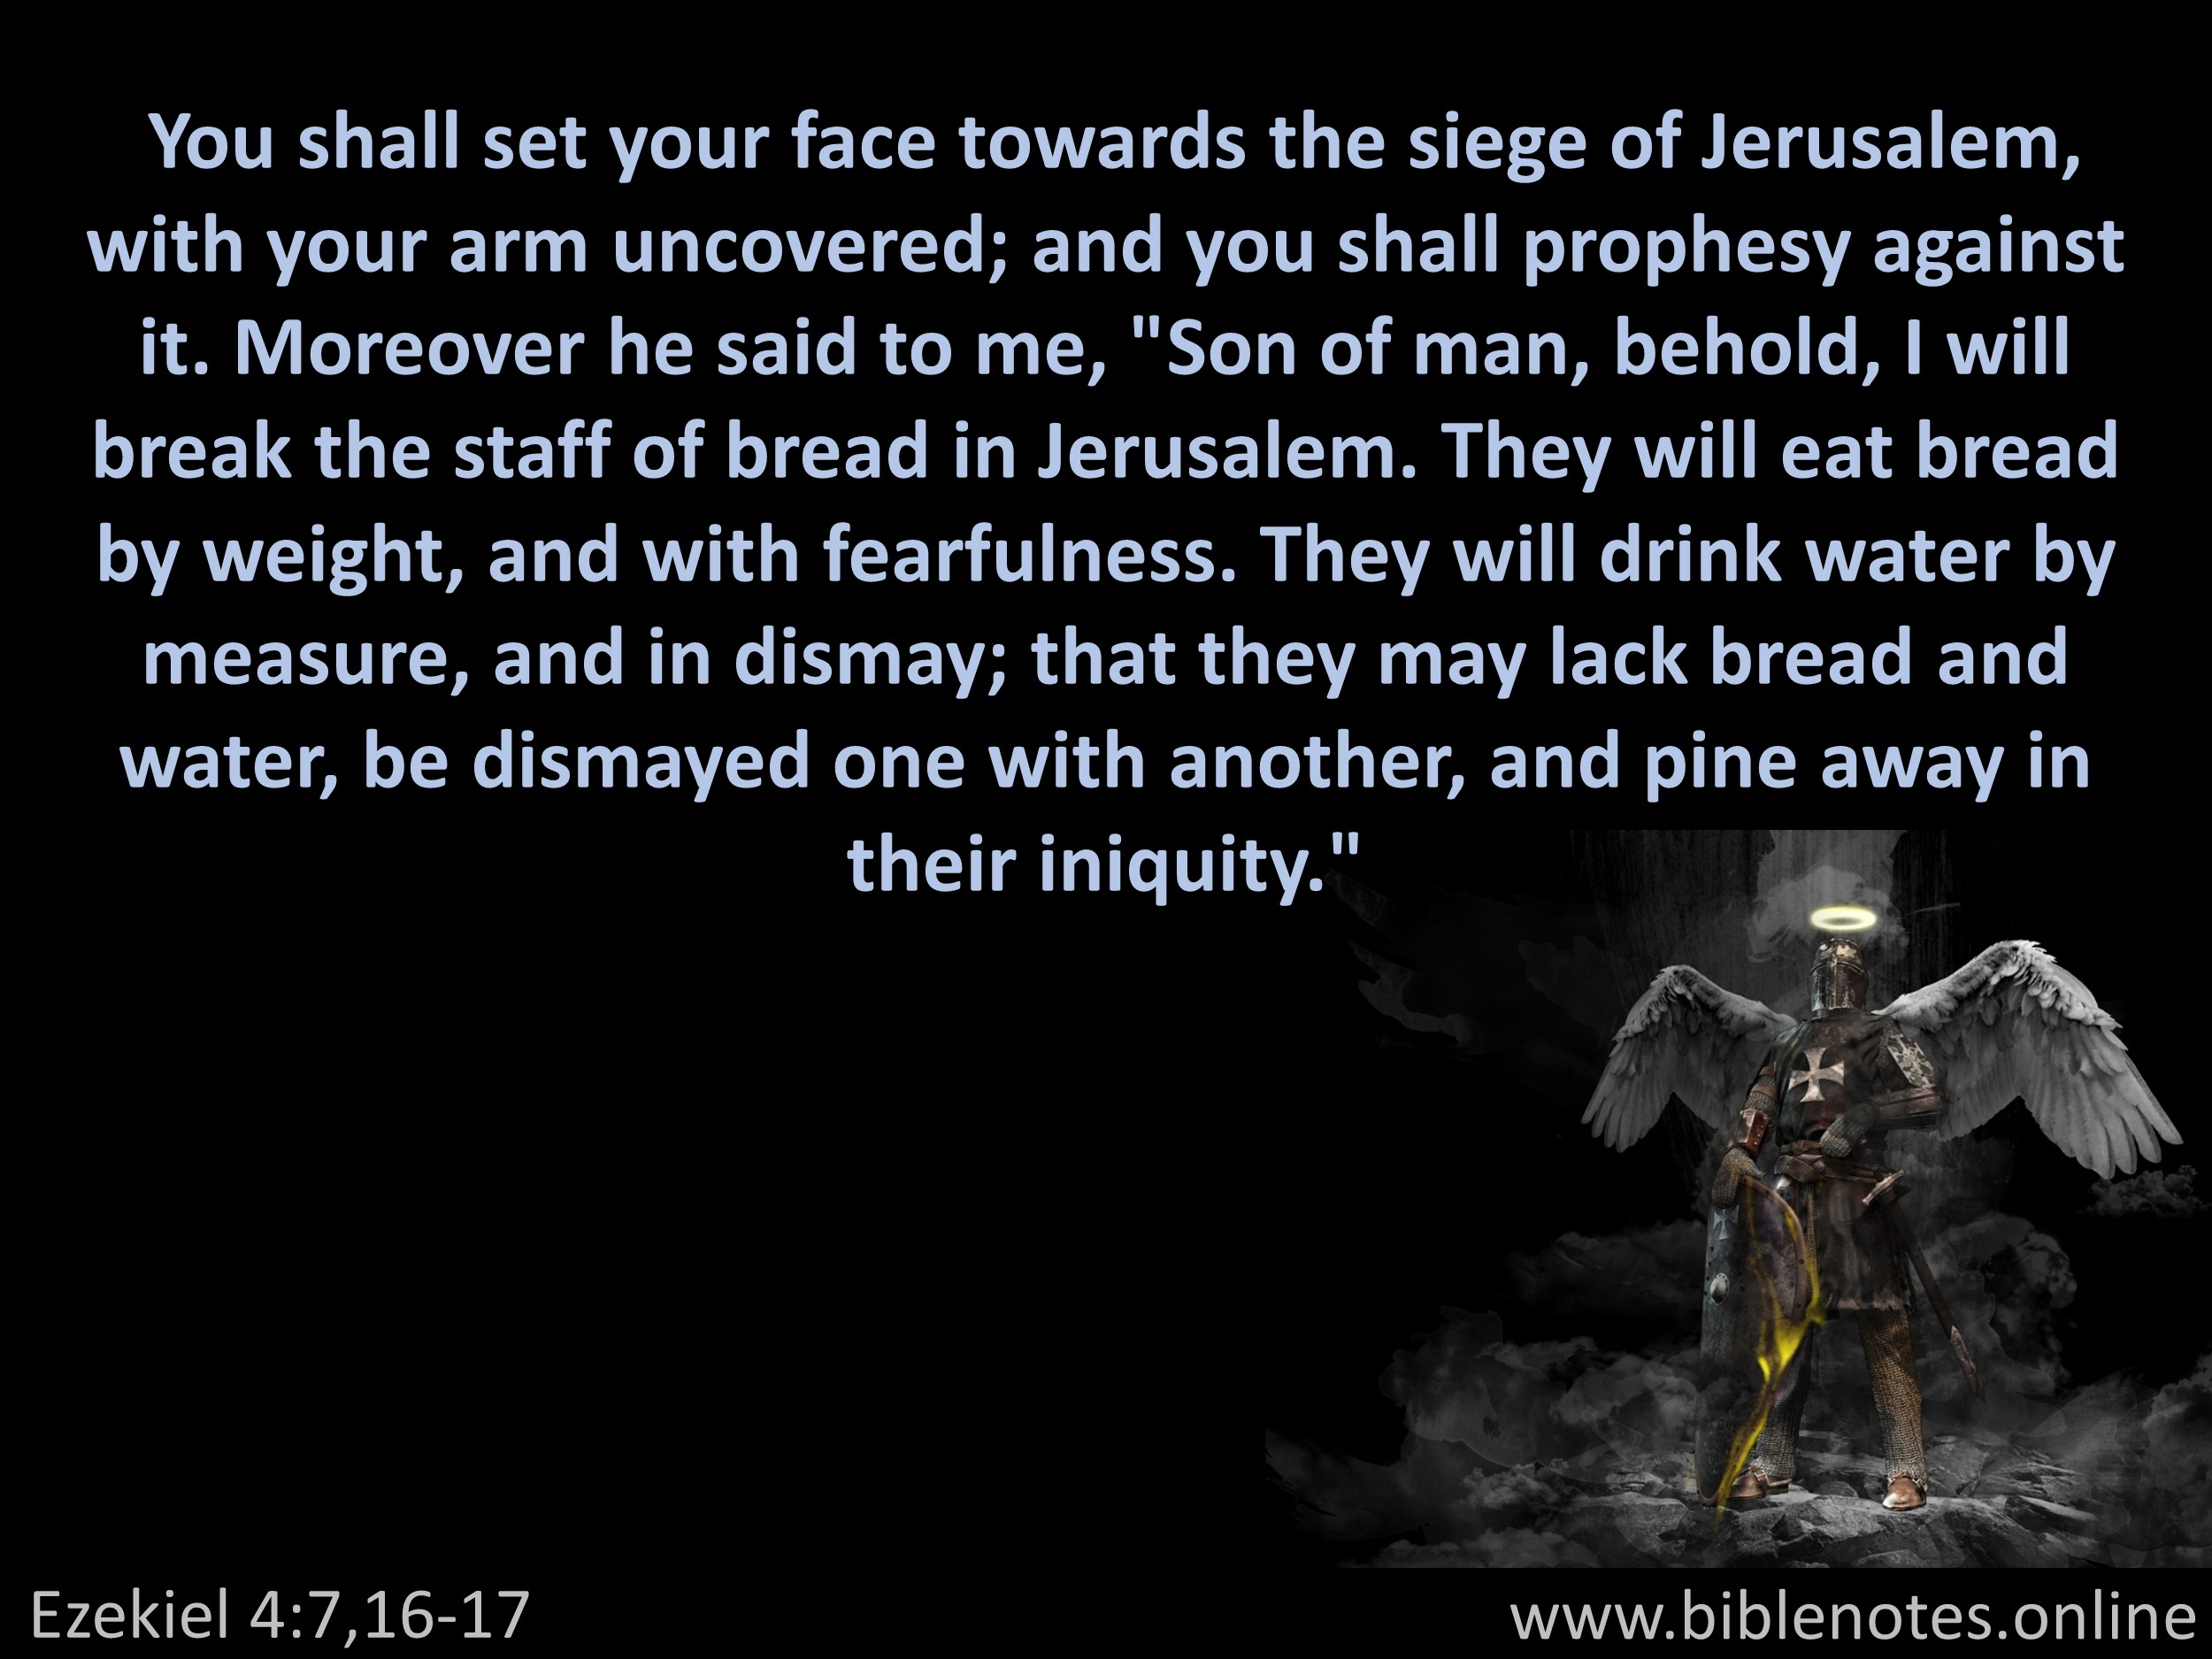 Bible Verse from Ezekiel Chapter 4